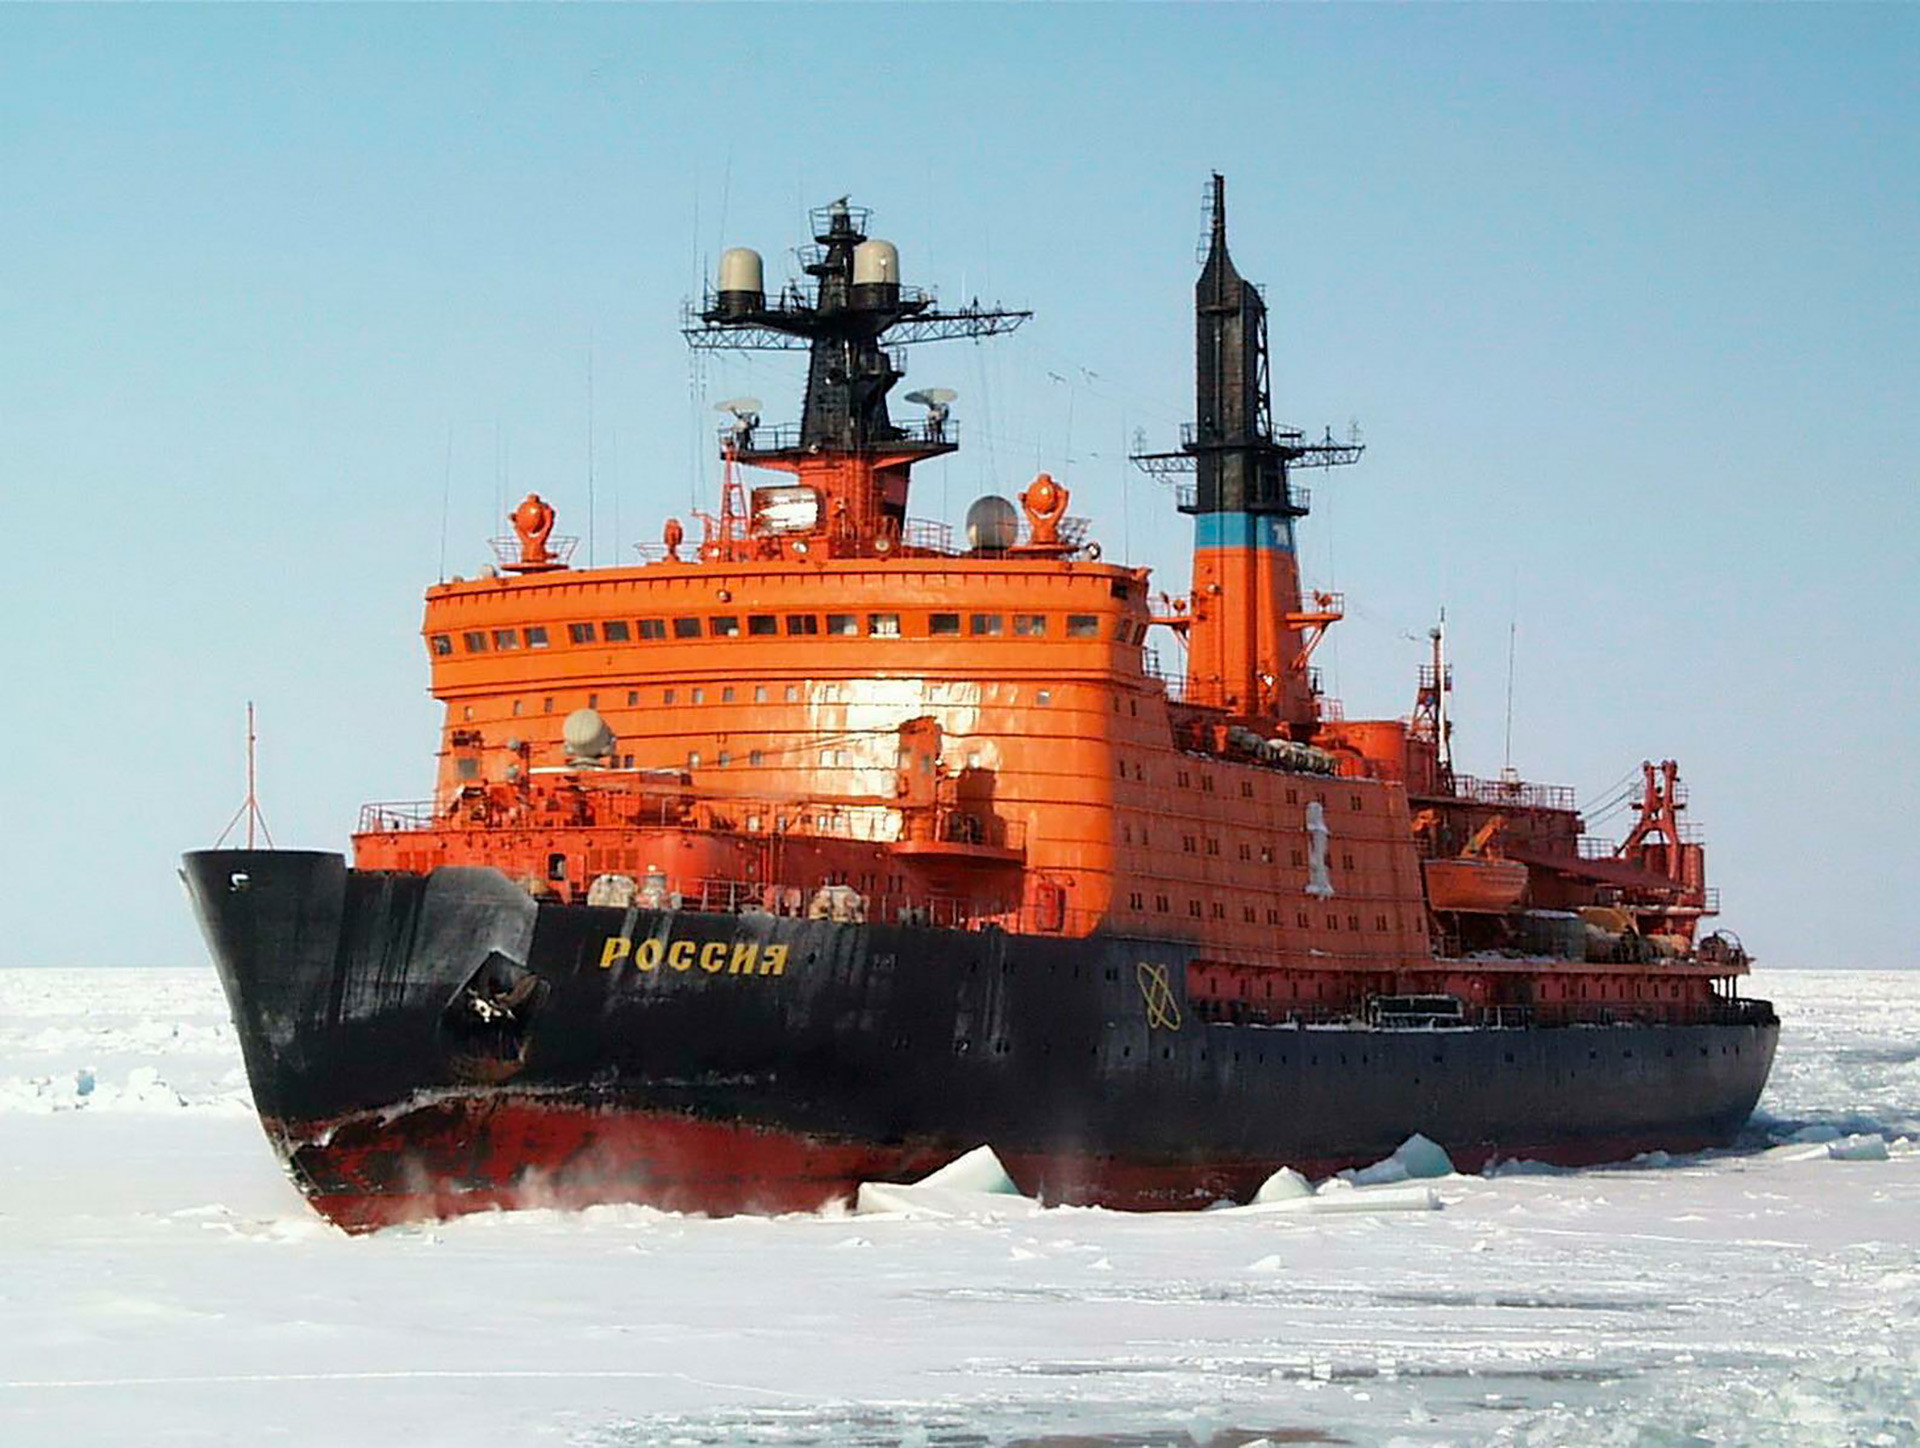 ソ連のユニークな巨大原子力砕氷船：レーニン号からレオニード・ブレジネフ号まで - ロシア・ビヨンド